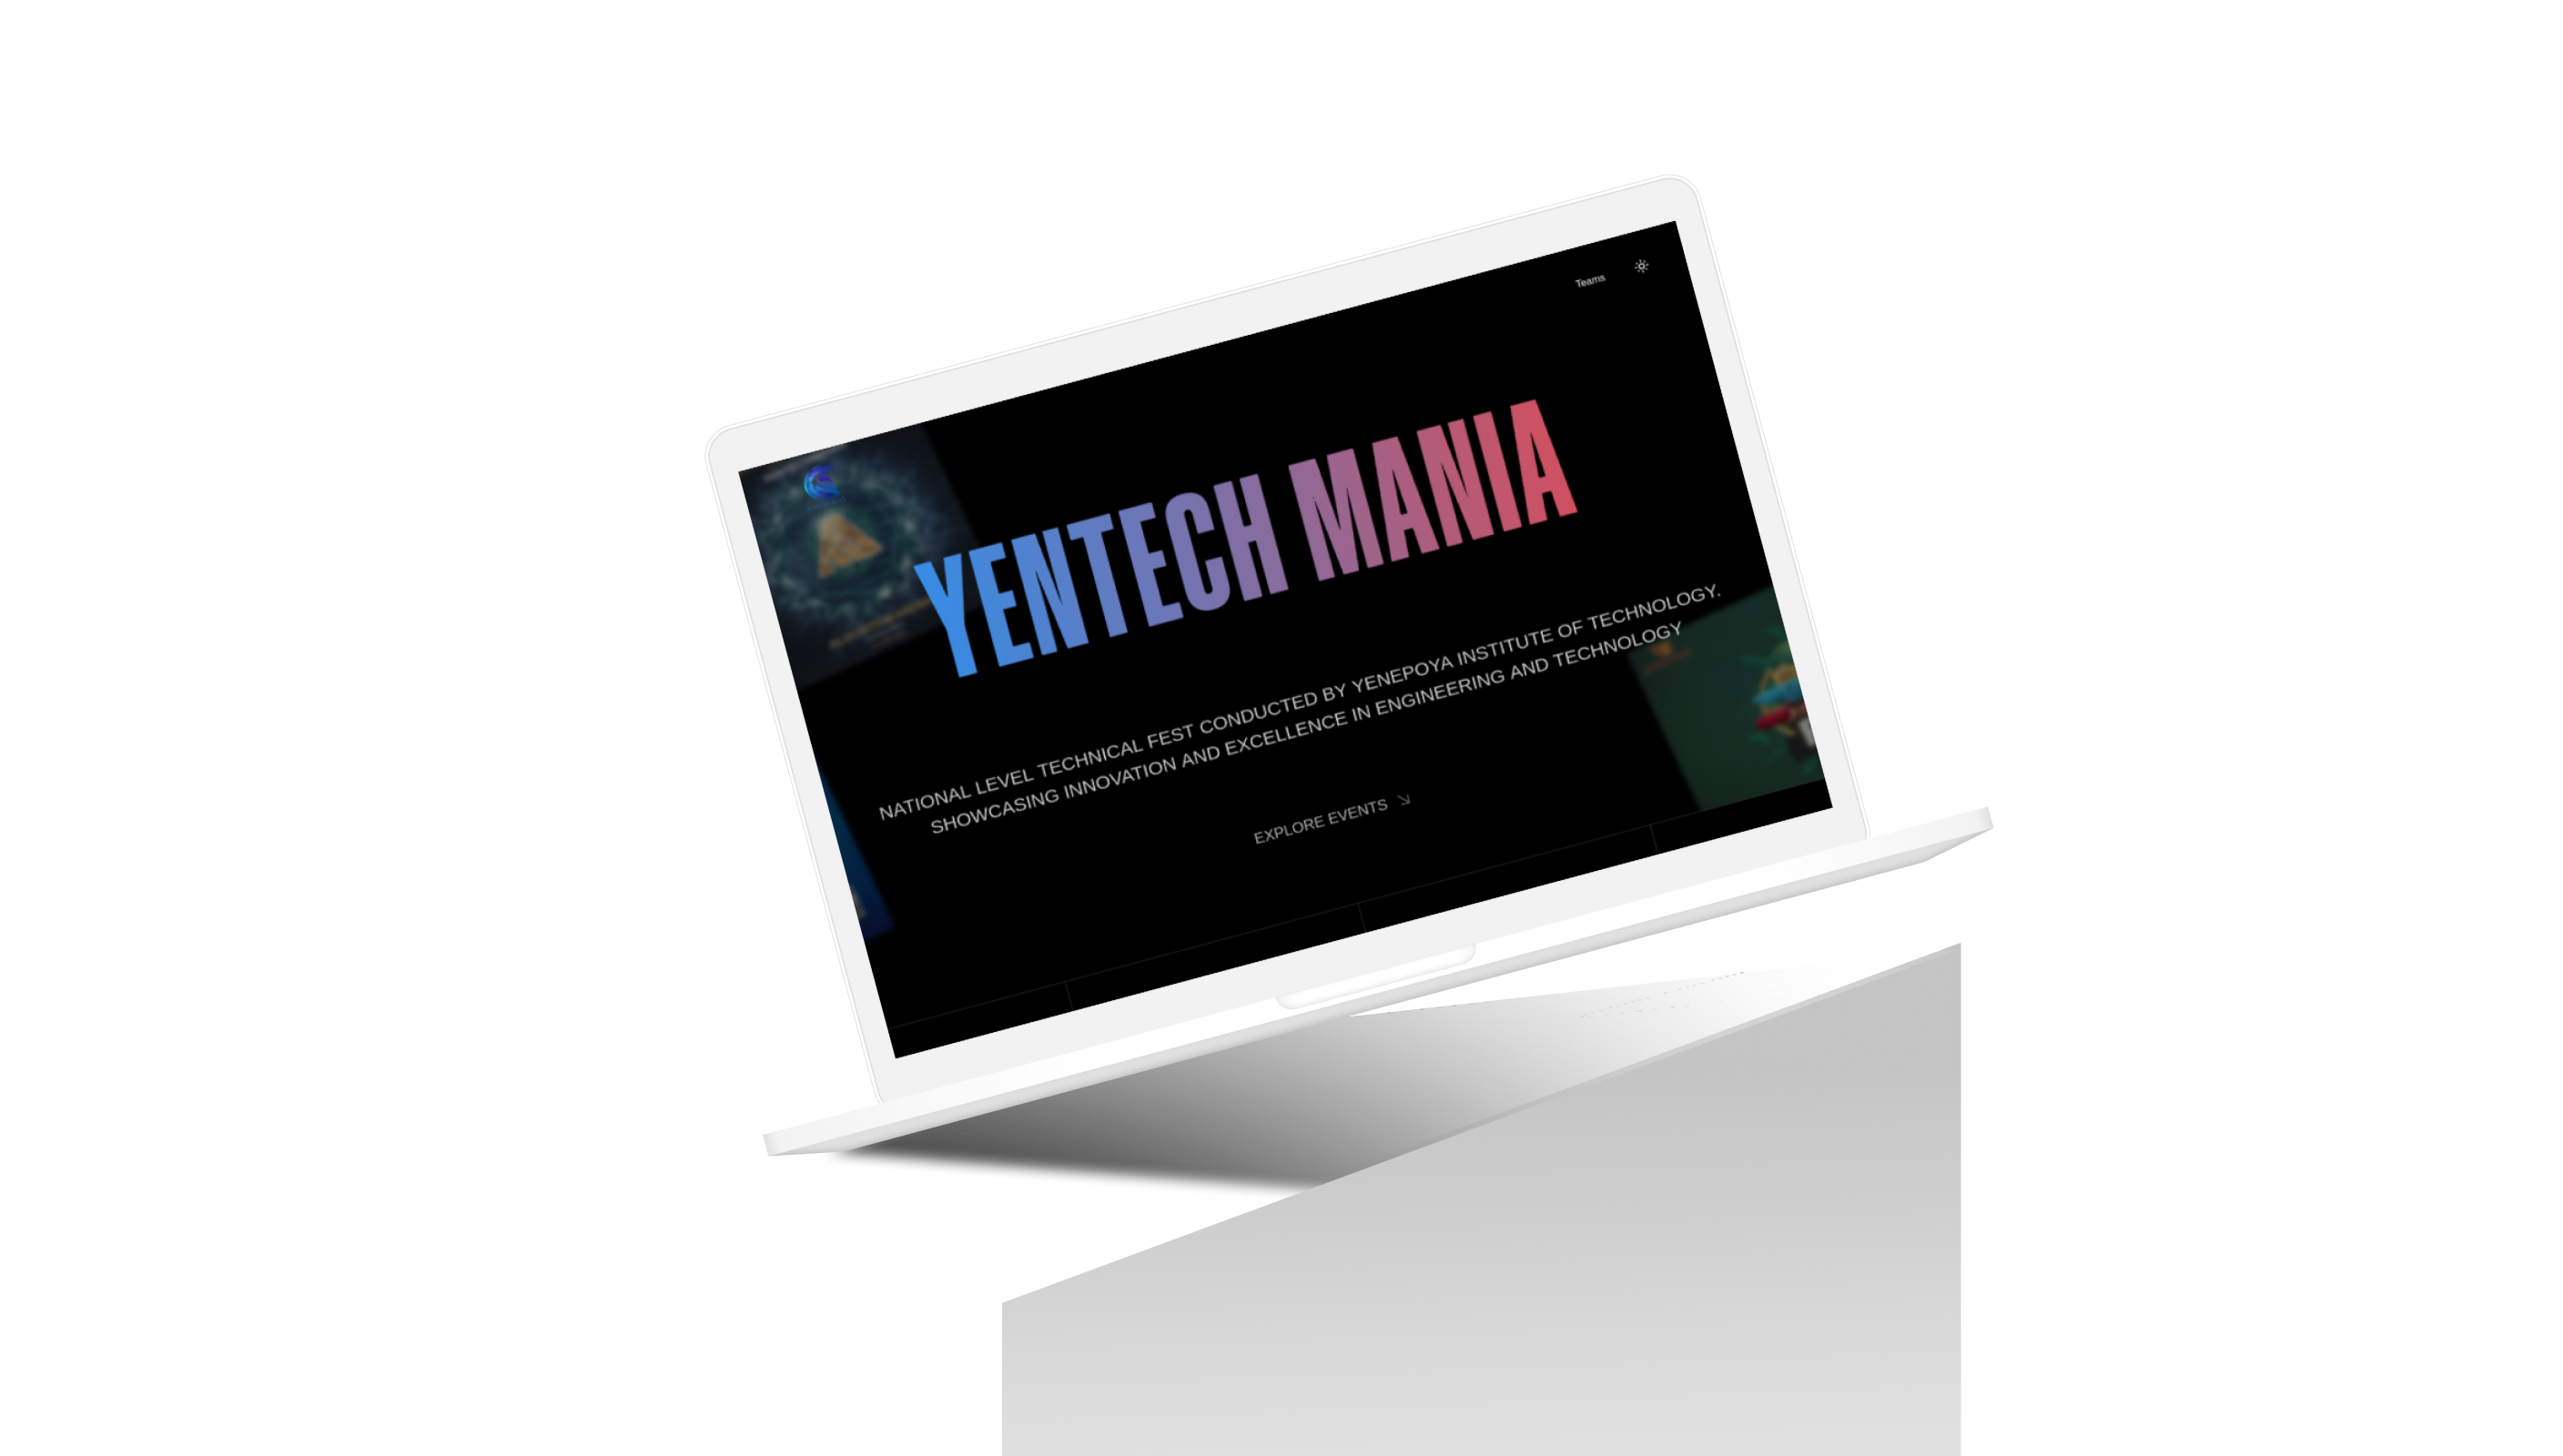 Yentech Mania